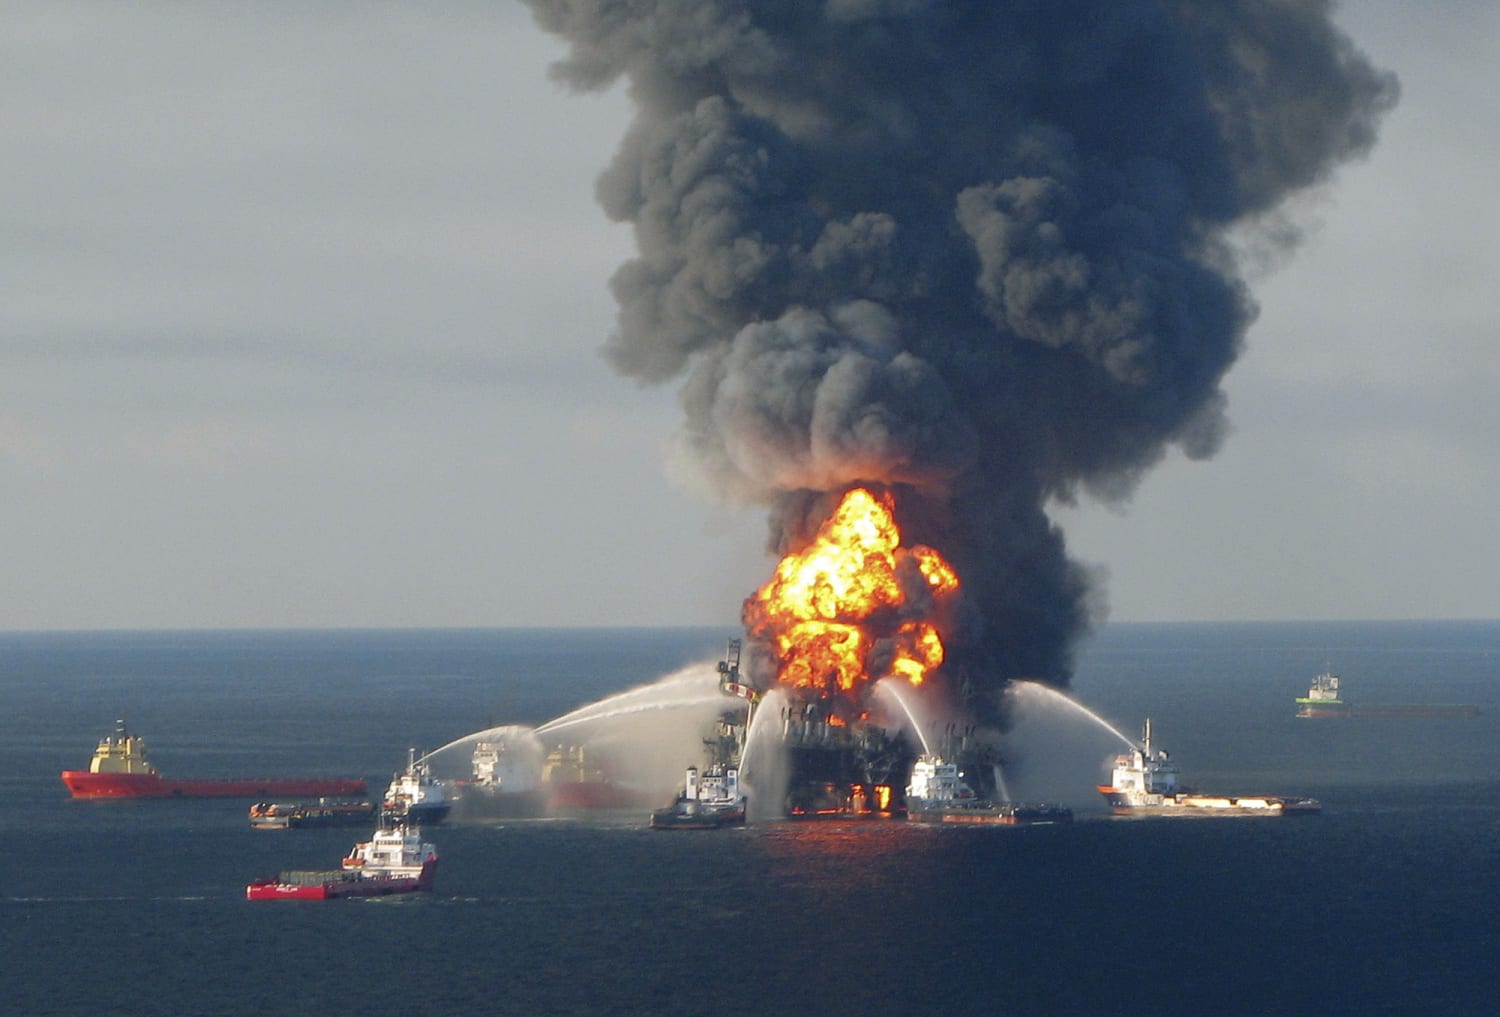 Взрыв буровых. Взрыв нефтяной платформы Deepwater Horizon в мексиканском заливе. Бритиш Петролеум авария в мексиканском заливе. Взрыв нефтяной платформы Deepwater Horizon - 20 апреля 2010 года. Взрыв на нефтяной платформе в мексиканском заливе 2010.